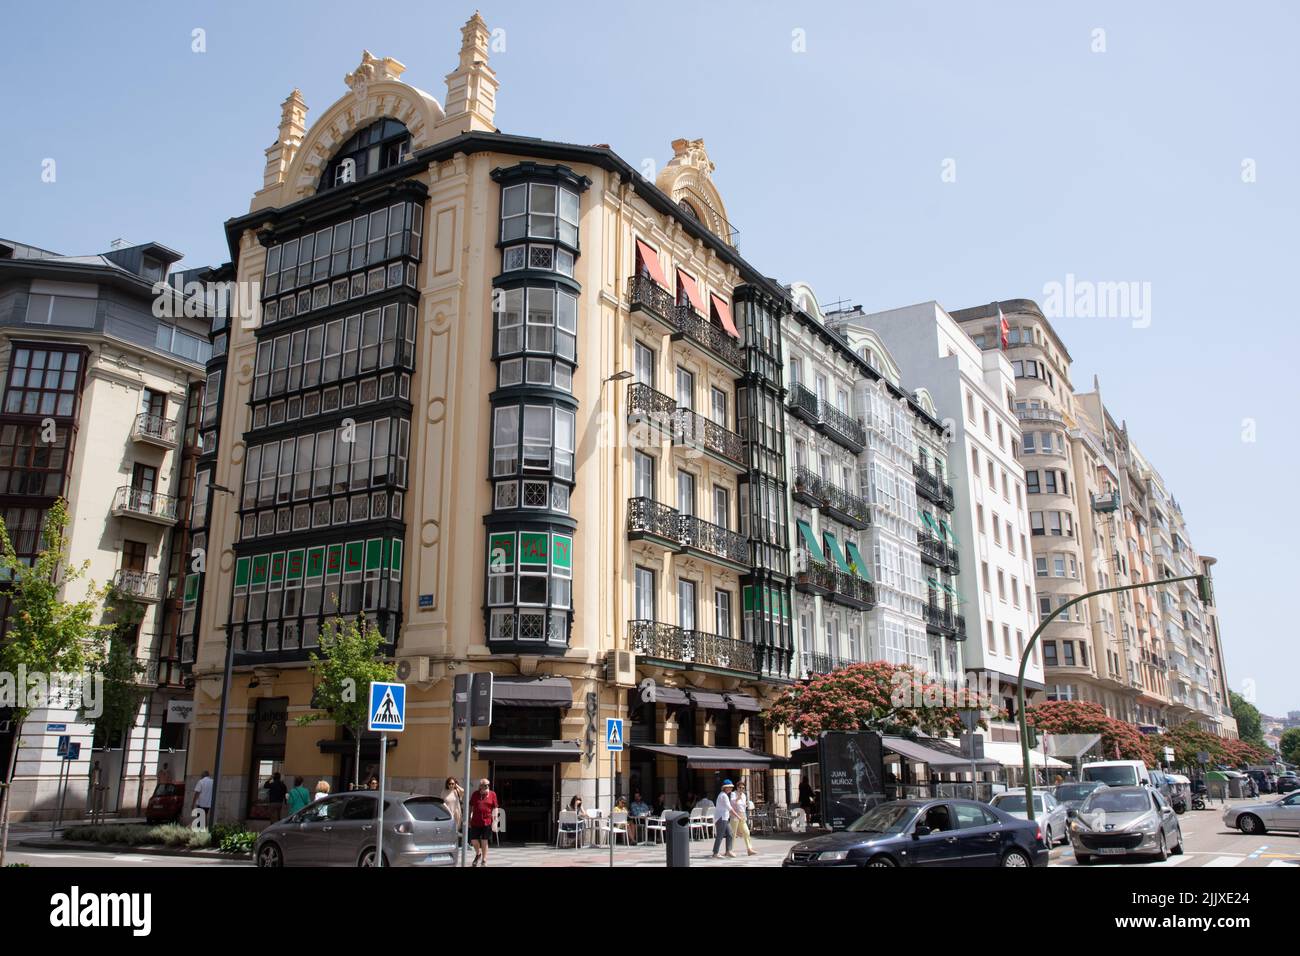 Calle de Calderon de la Barca Santander Stock Photo